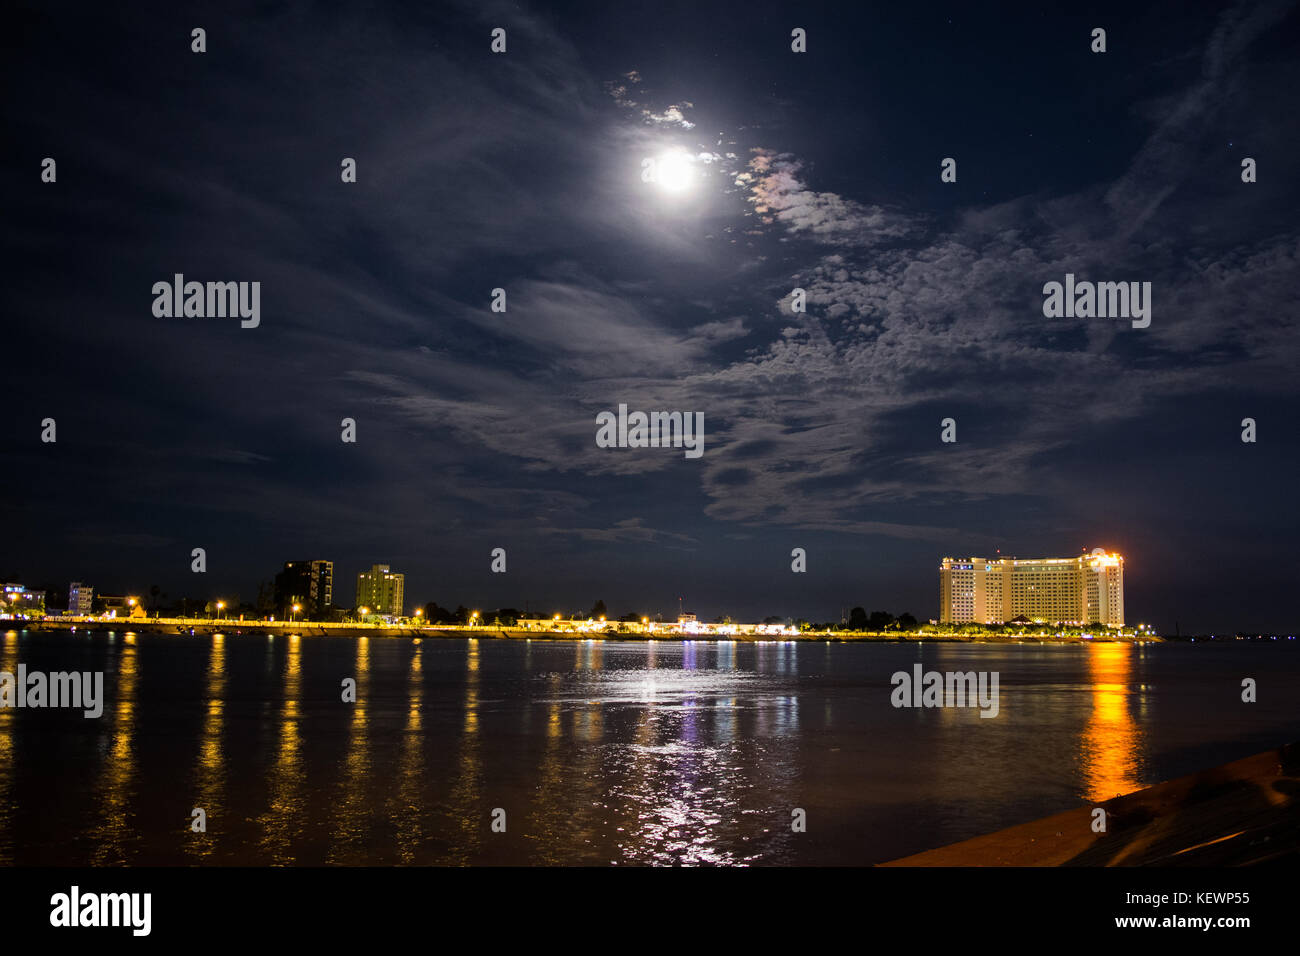 Nuit paysage de la rivière Tonle Sap et son conflux avec le Mékong. Hôtel de luxe dans la distance, la lune reflétant, Sisowath Quay, au Cambodge Banque D'Images